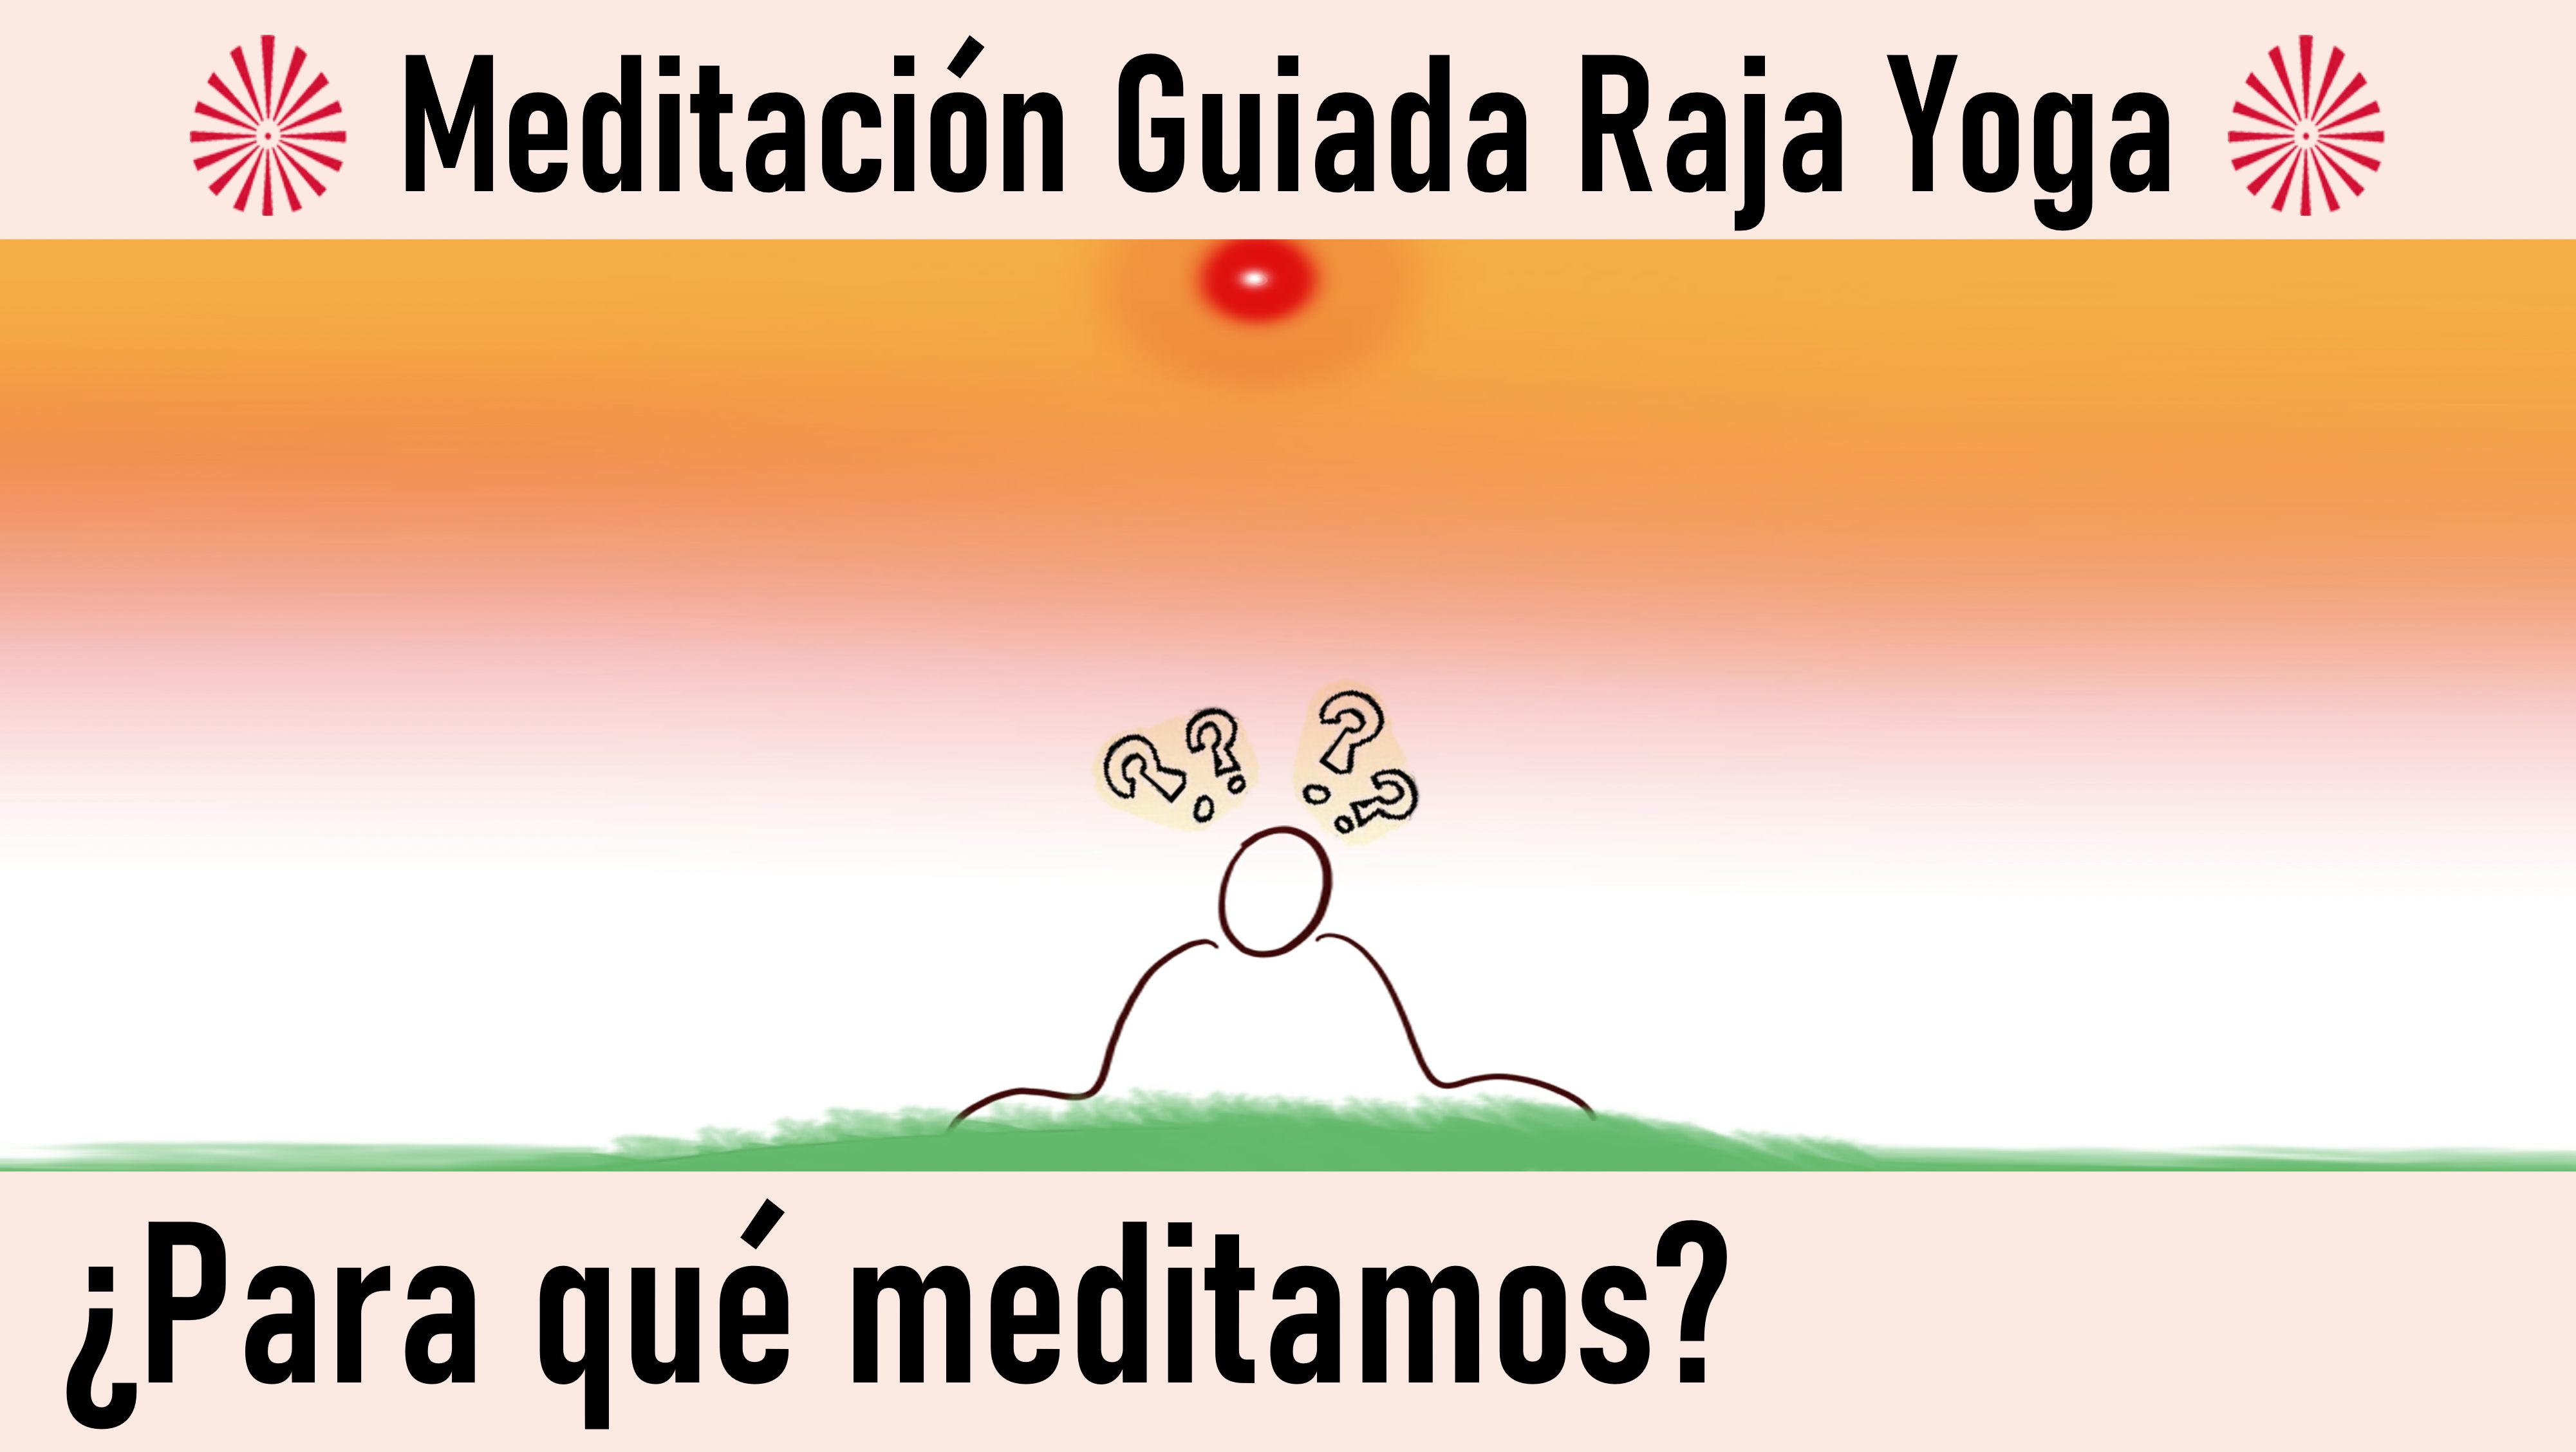 Meditación Raja Yoga: Para qué meditamos (11 Agosto 2020) On-line desde Canarias